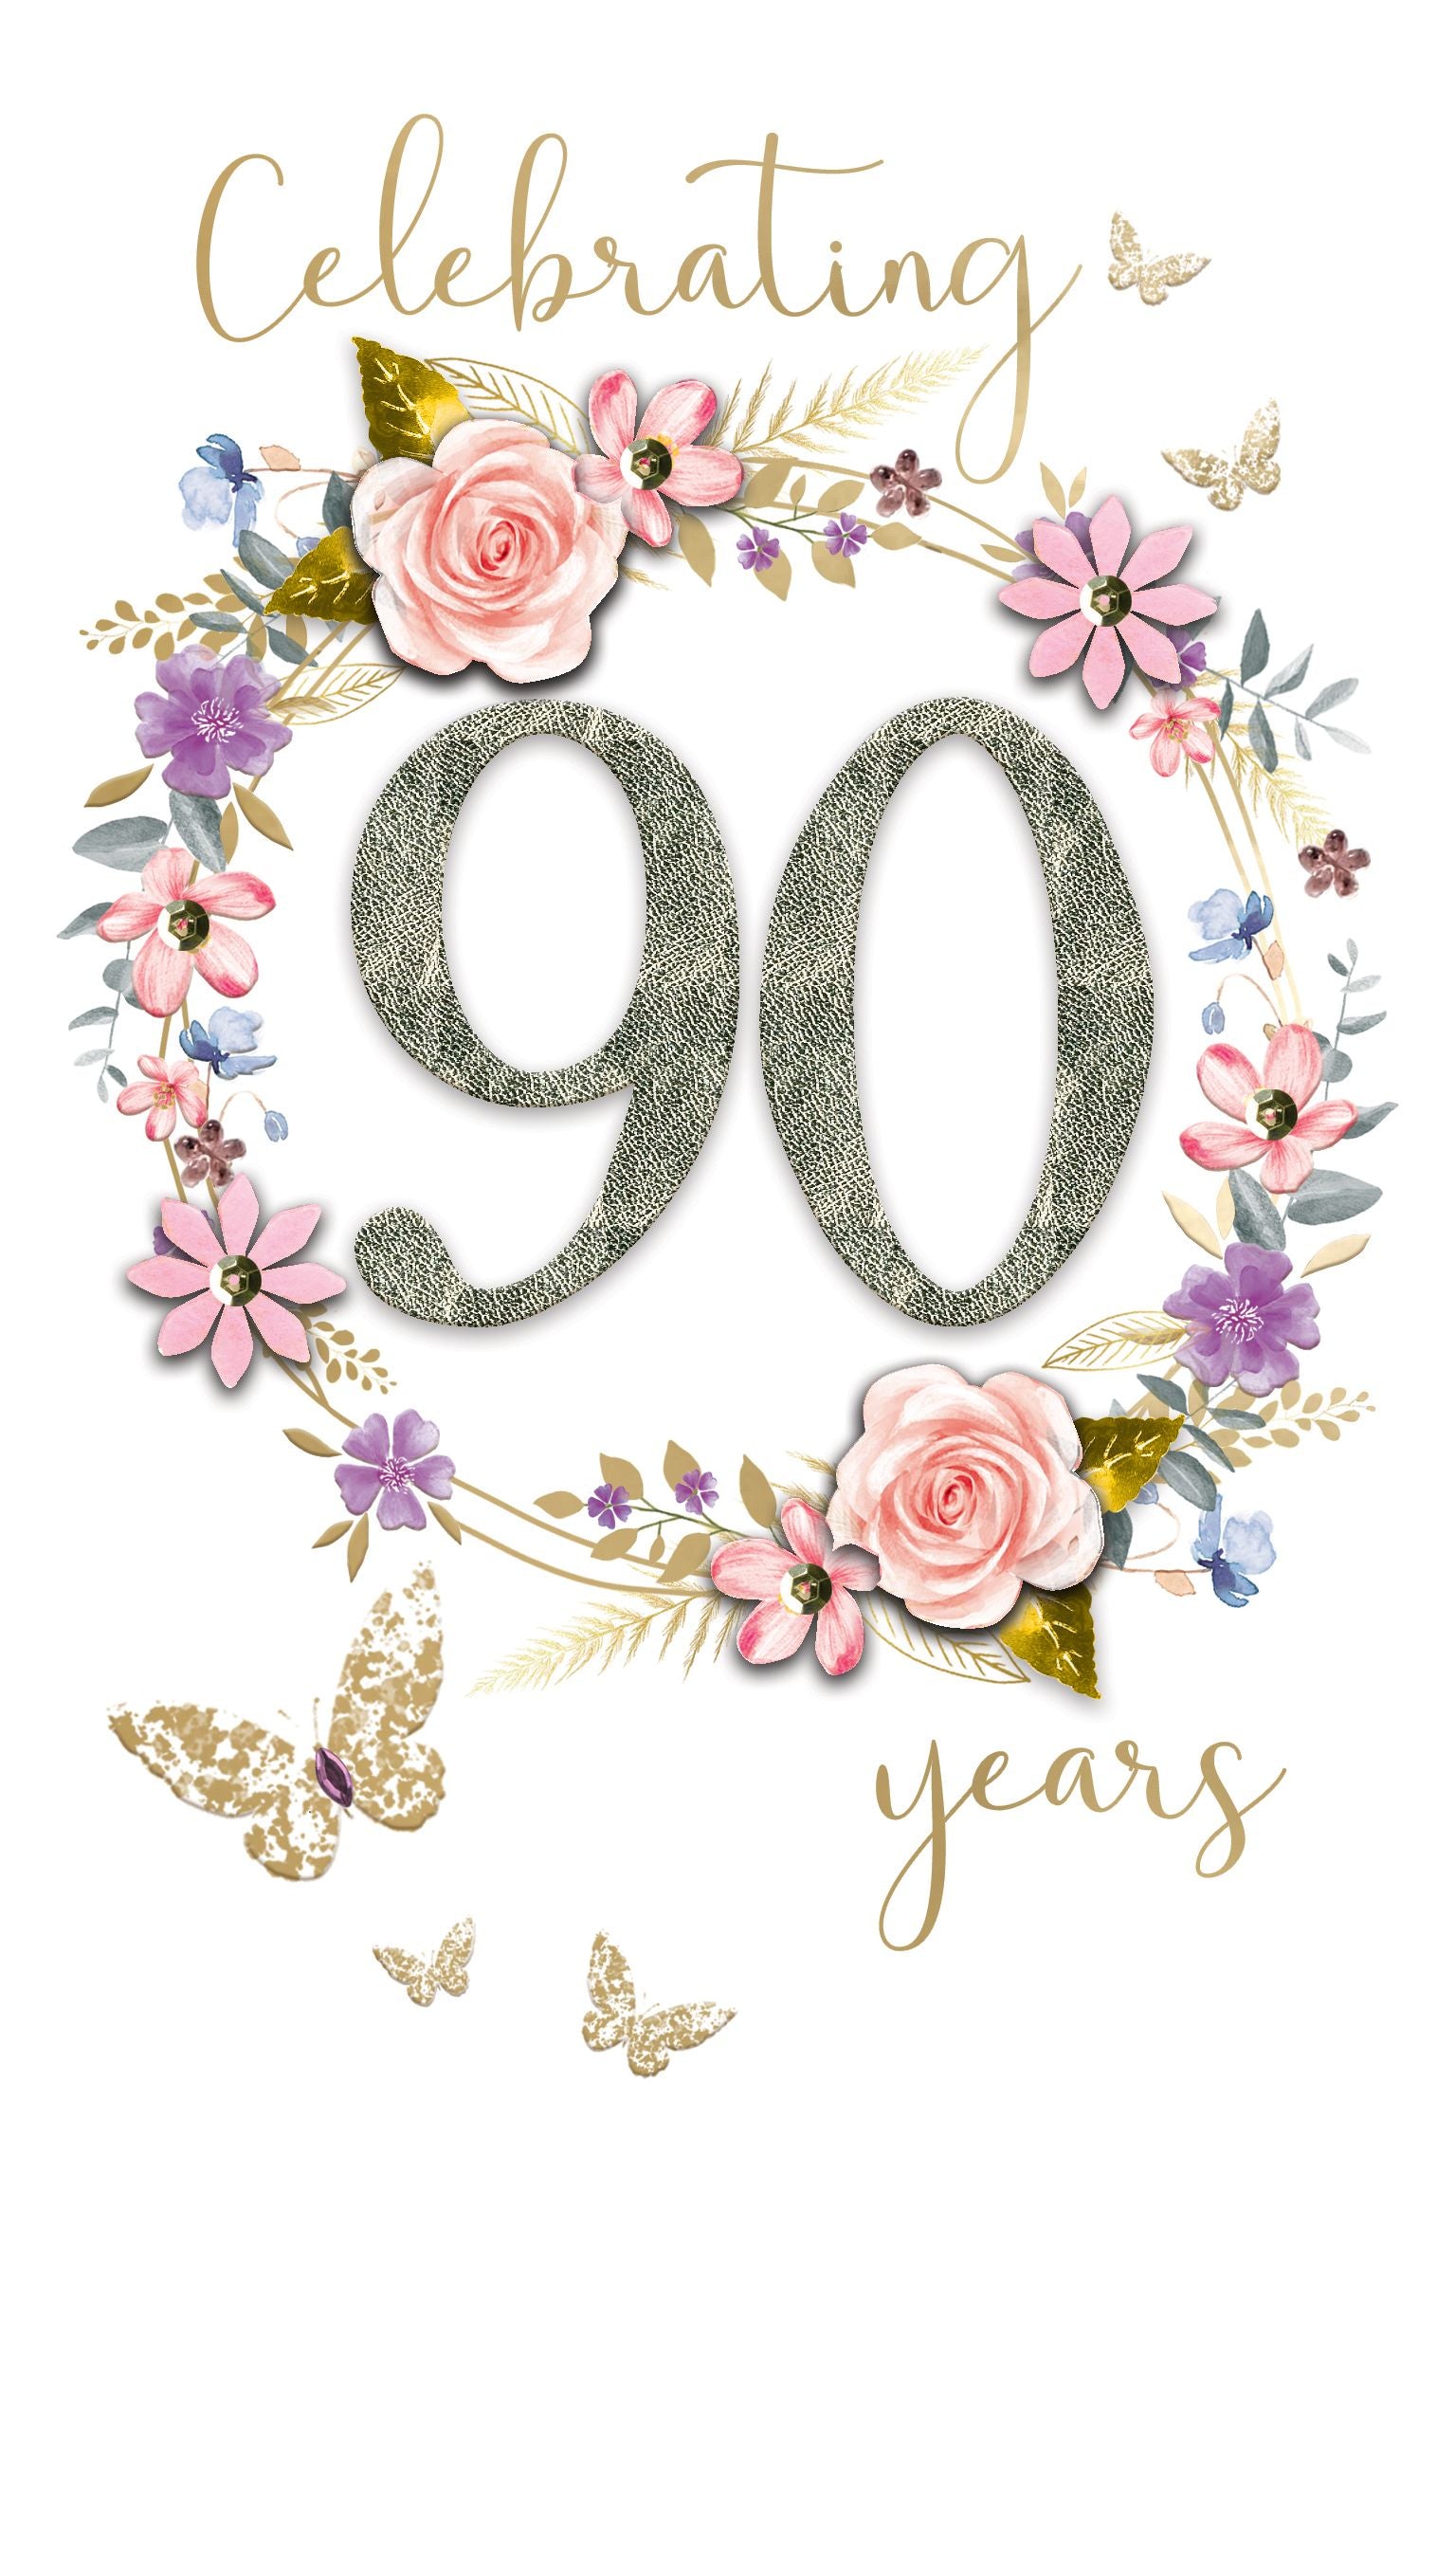 Celebrating 90 Years